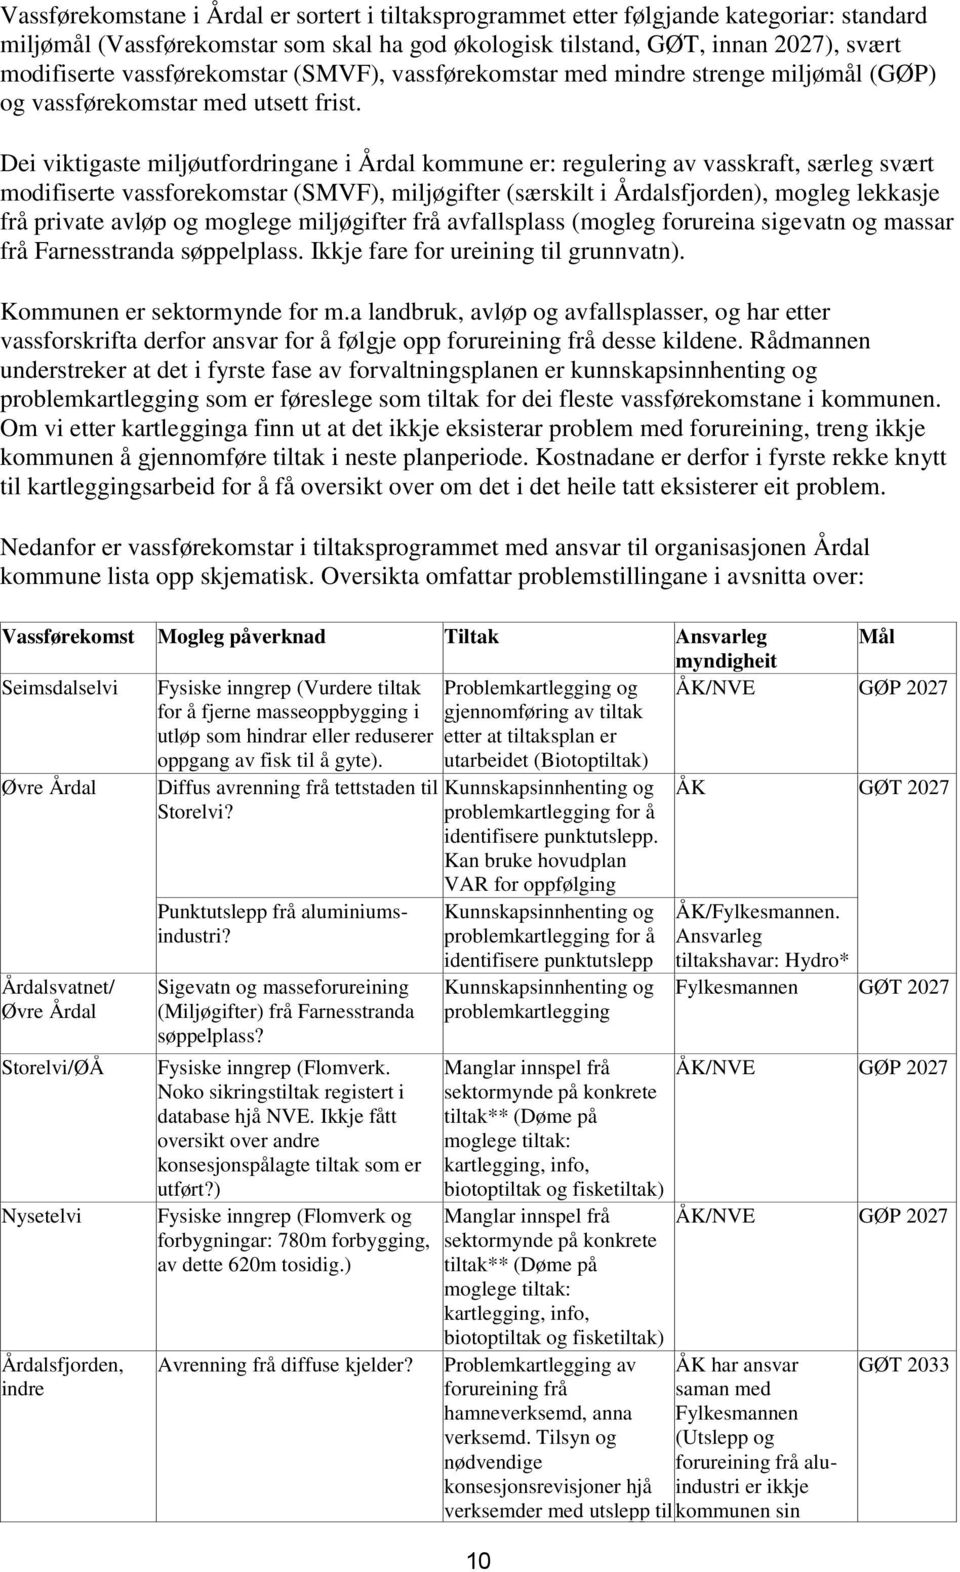 Dei viktigaste miljøutfordringane i Årdal kommune er: regulering av vasskraft, særleg svært modifiserte vassforekomstar (SMVF), miljøgifter (særskilt i Årdalsfjorden), mogleg lekkasje frå private